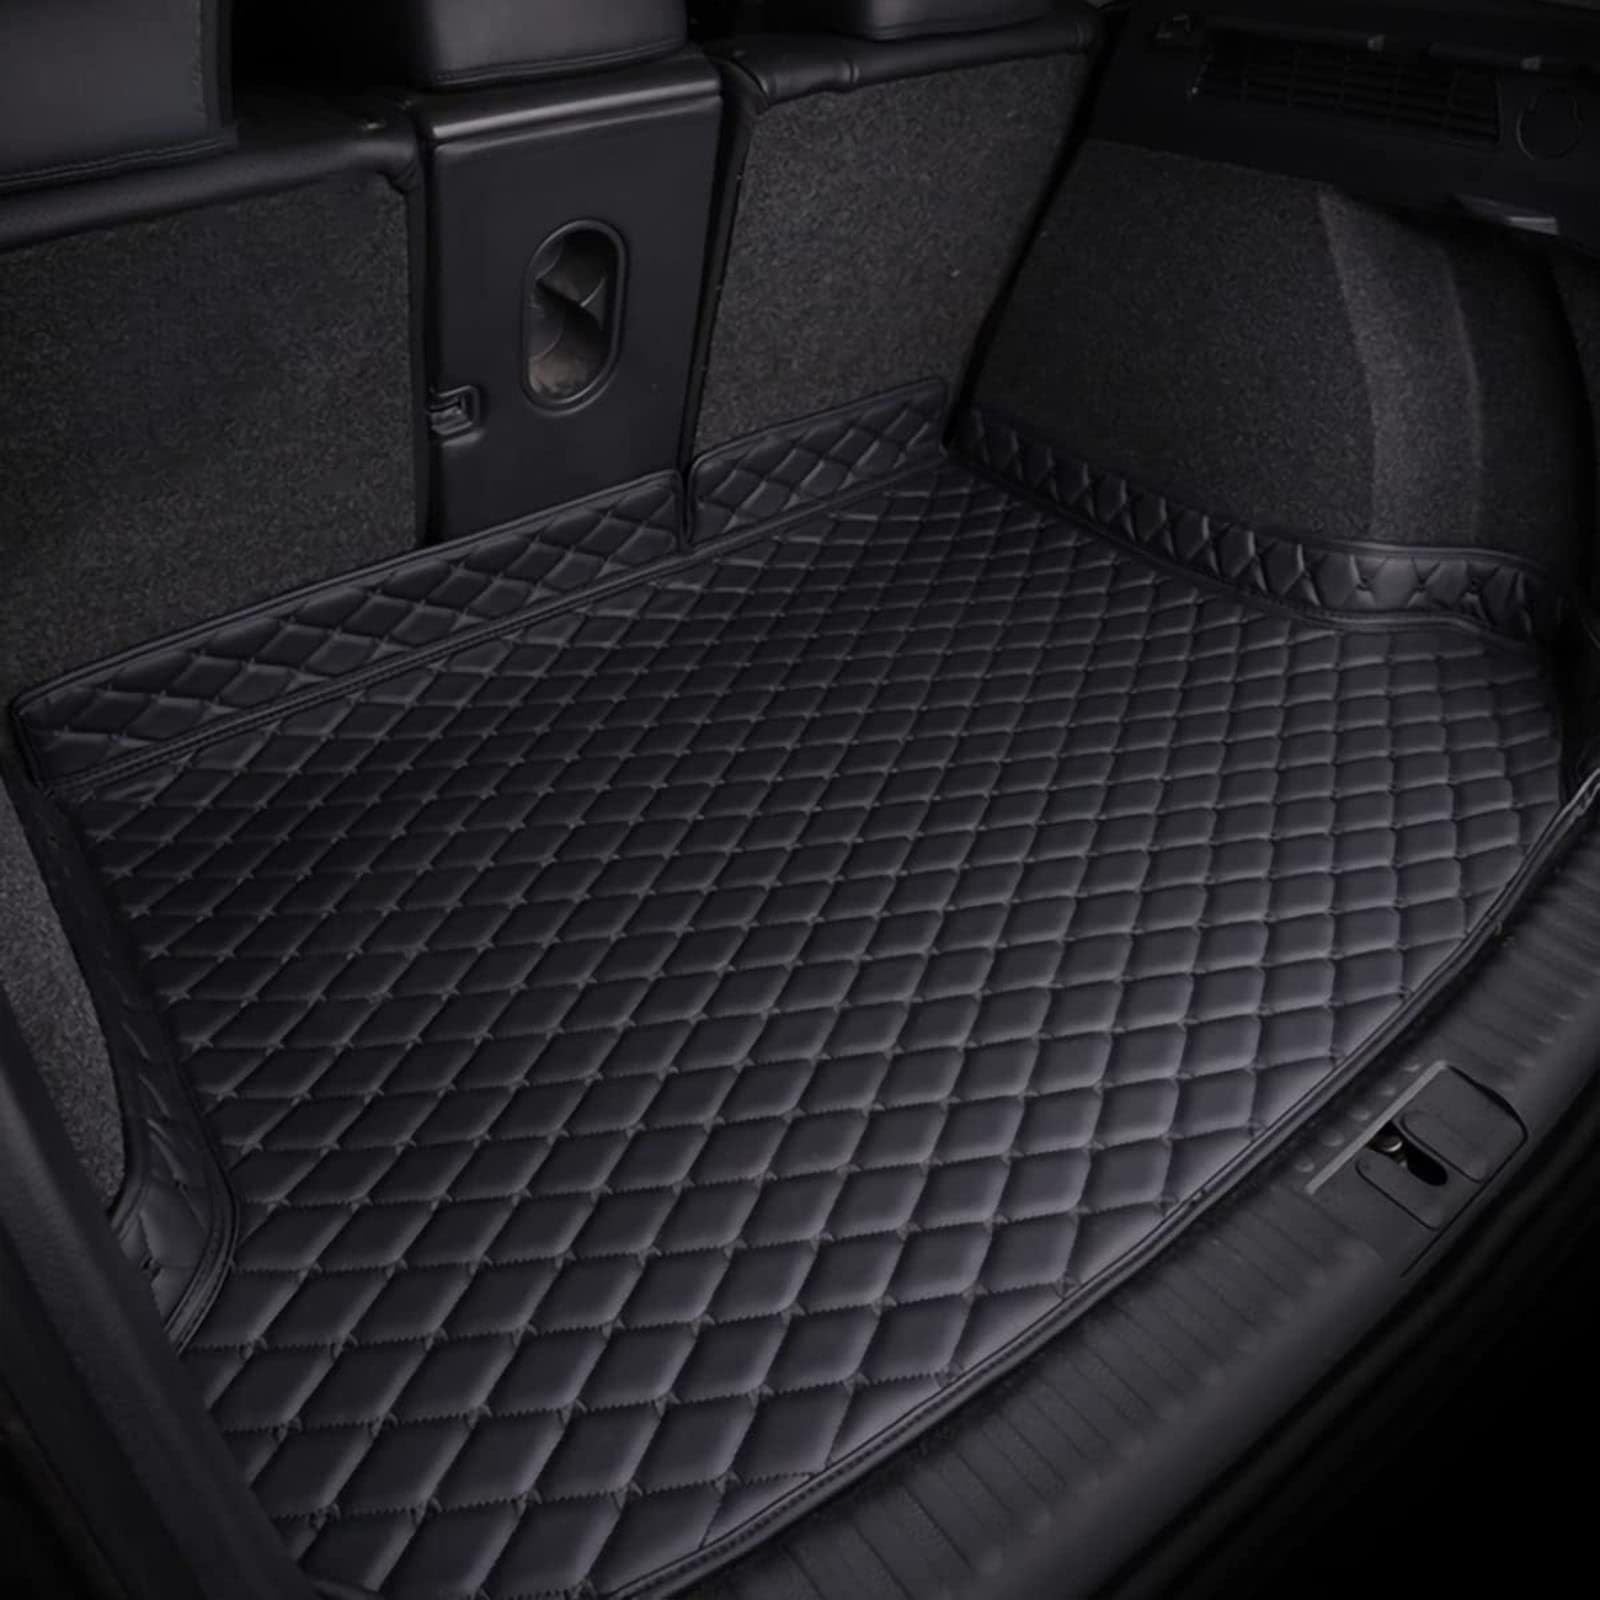 Leder Kofferraummatte für Au-di A8 Hybrid 2018 2019 2020 - Auto Kofferraumwanne - Allwetter Kofferraum Schutzmatte - Gepäckraumwanne mit Erhöhten Kanten - Gepäckraumeinlage,Black von FERFXN